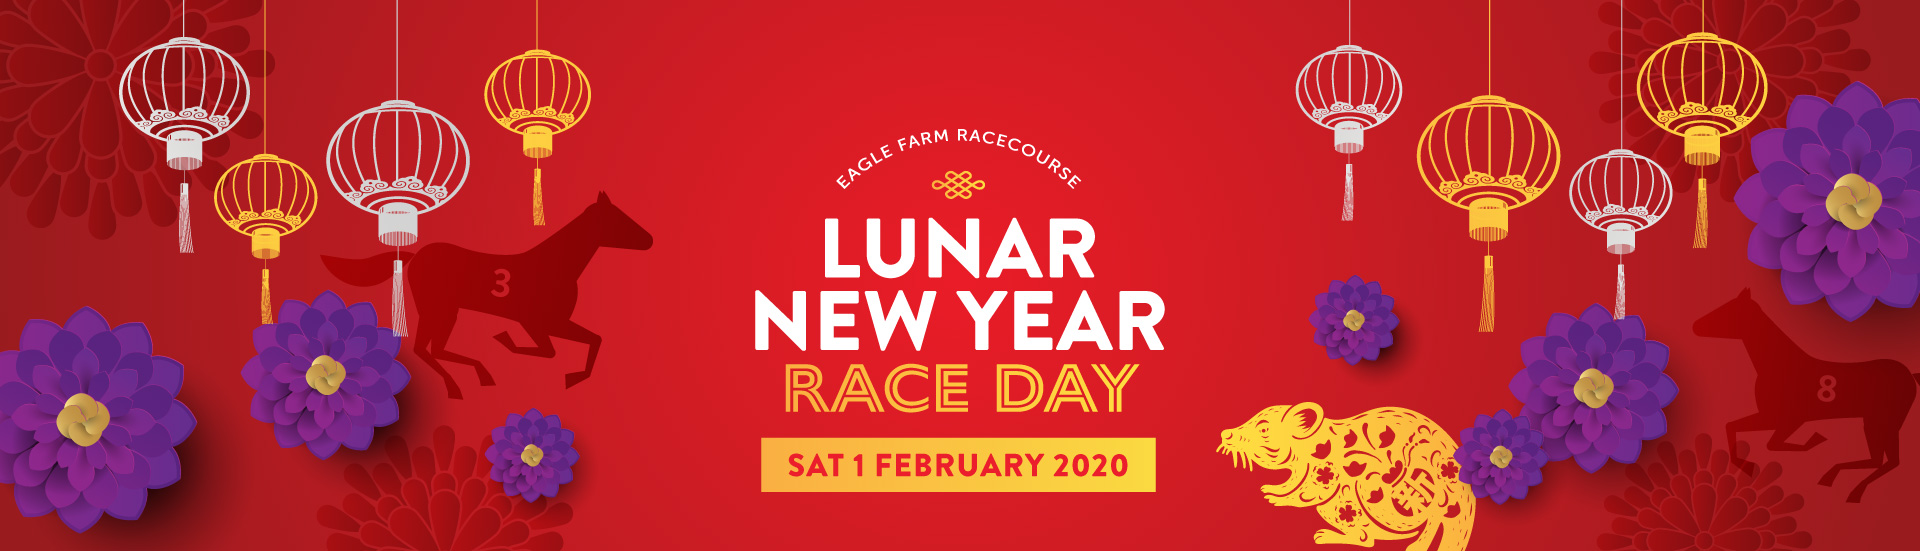 Lunar New Year | Brisbane Racing Club